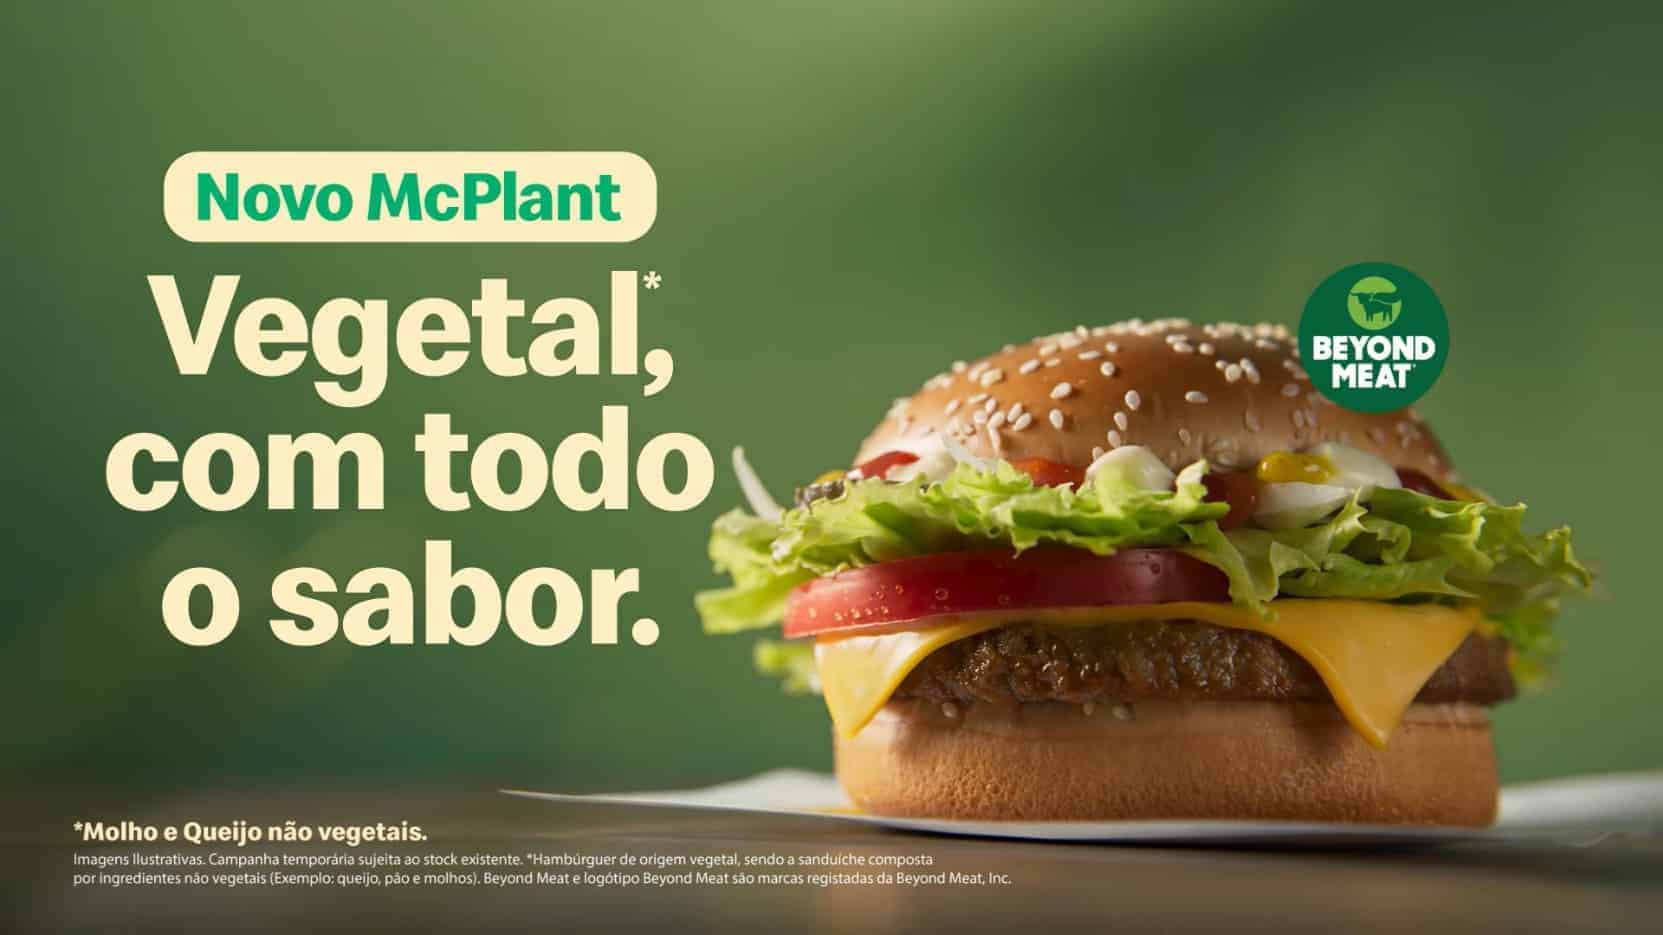 © McDonald's